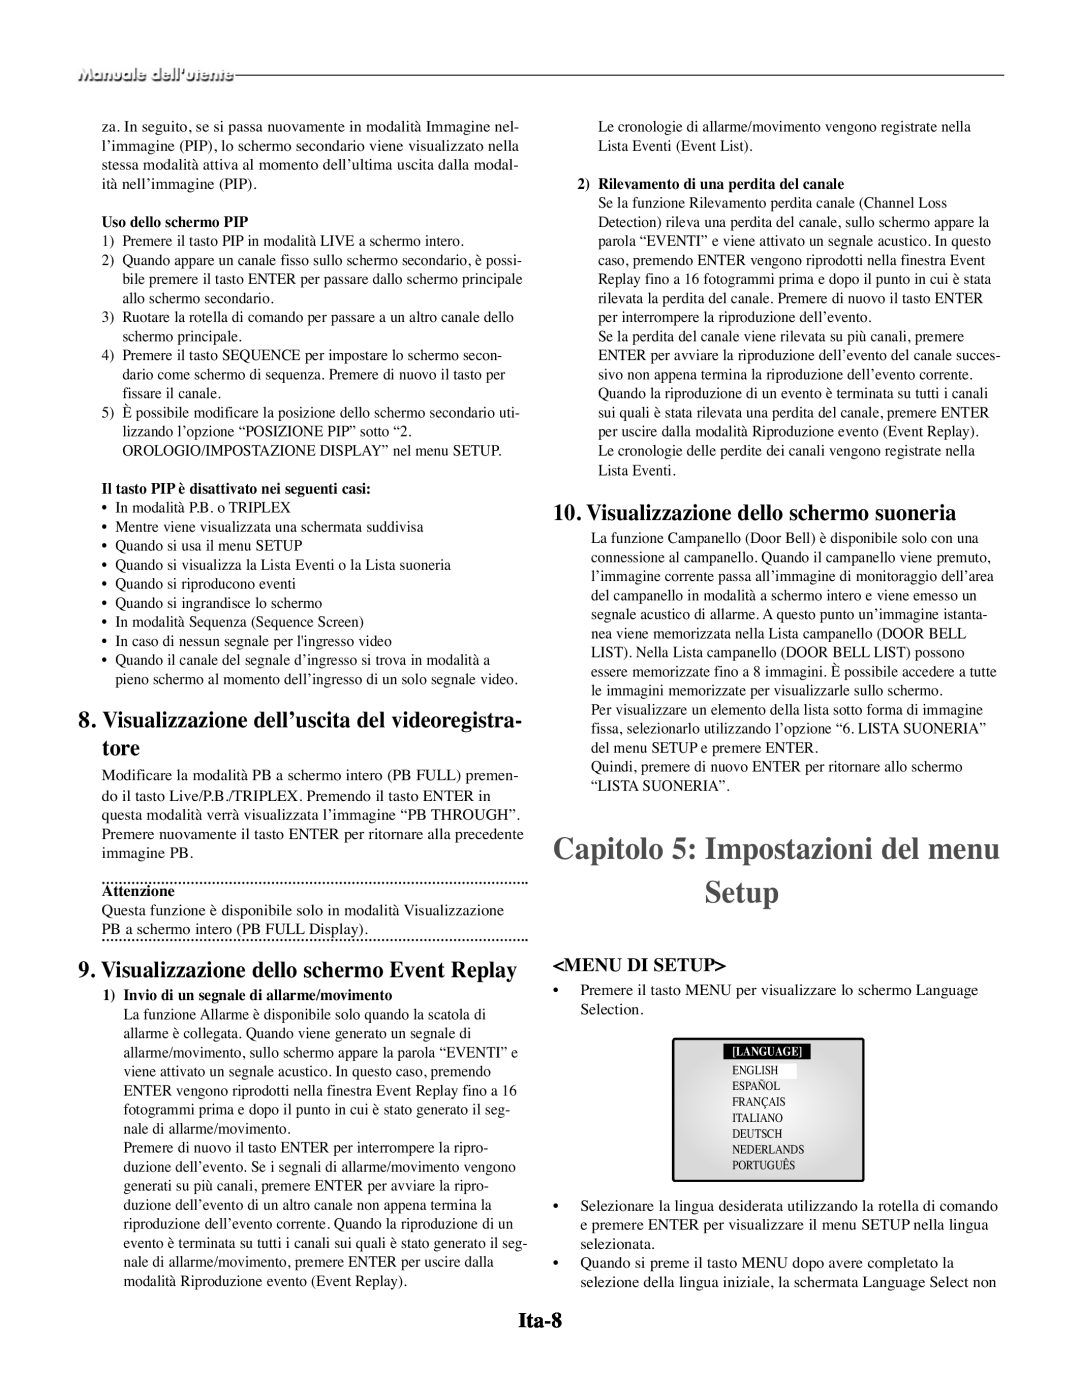 Samsung SMO-210TRP Capitolo 5 Impostazioni del menu Setup, Visualizzazione dell’uscita del videoregistra- tore, Ita-8 